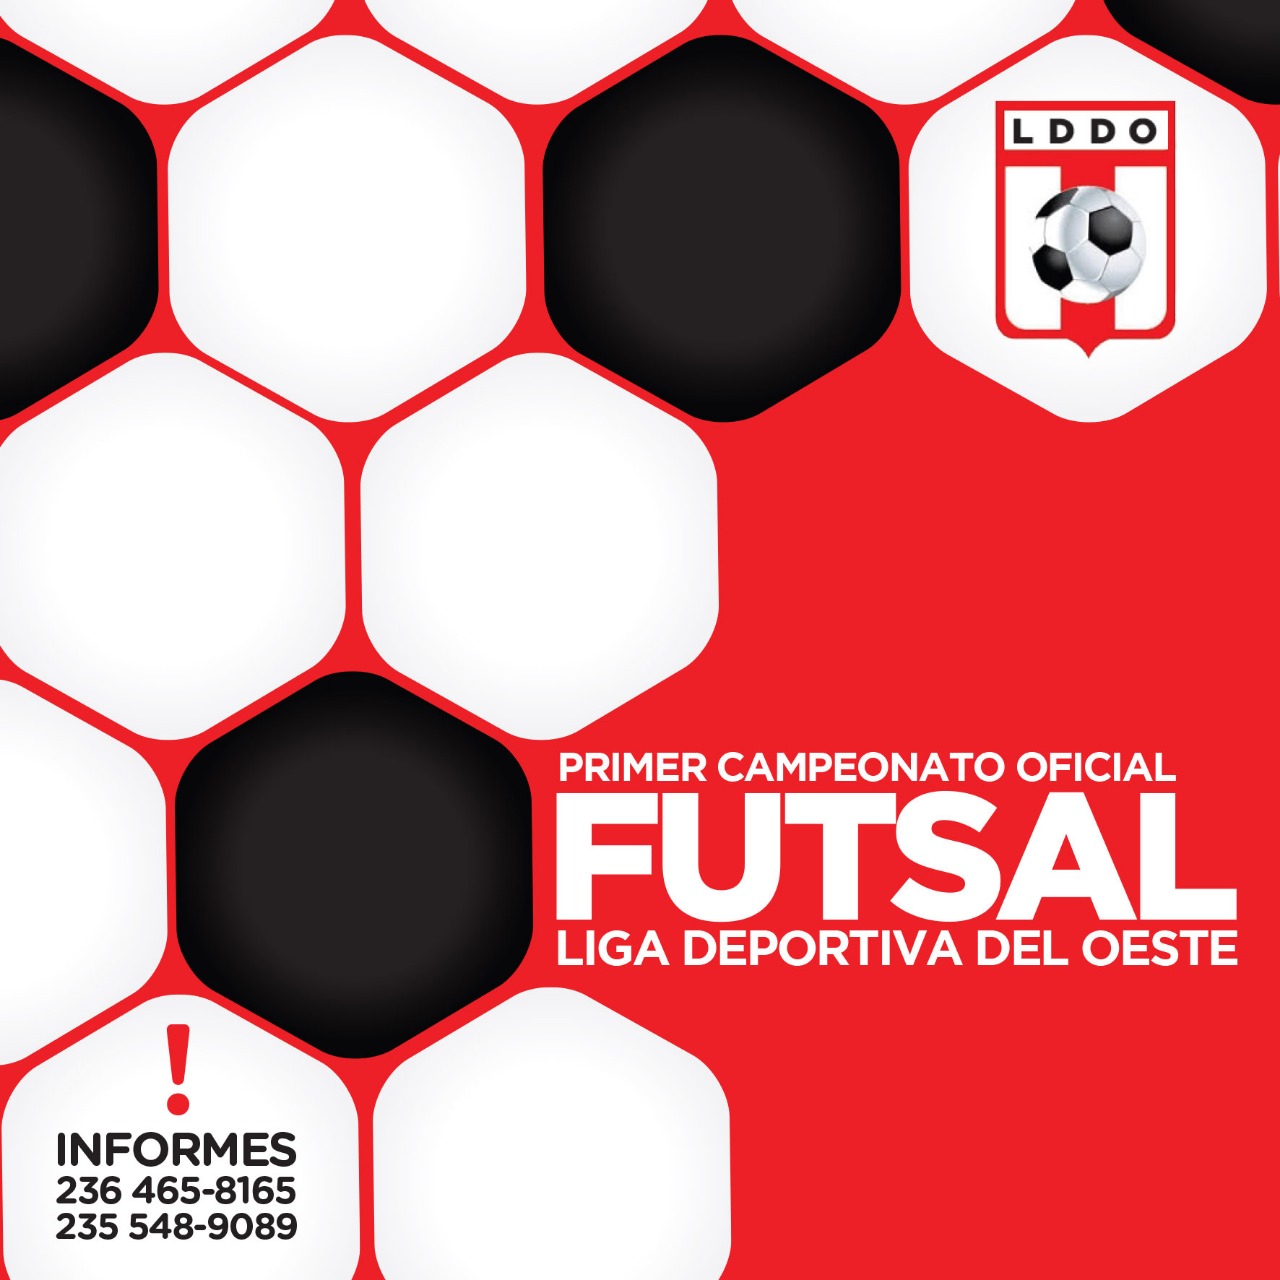 Está abierta la inscripción para el primer torneo oficial de futsal que organiza la Liga Deportiva del Oeste